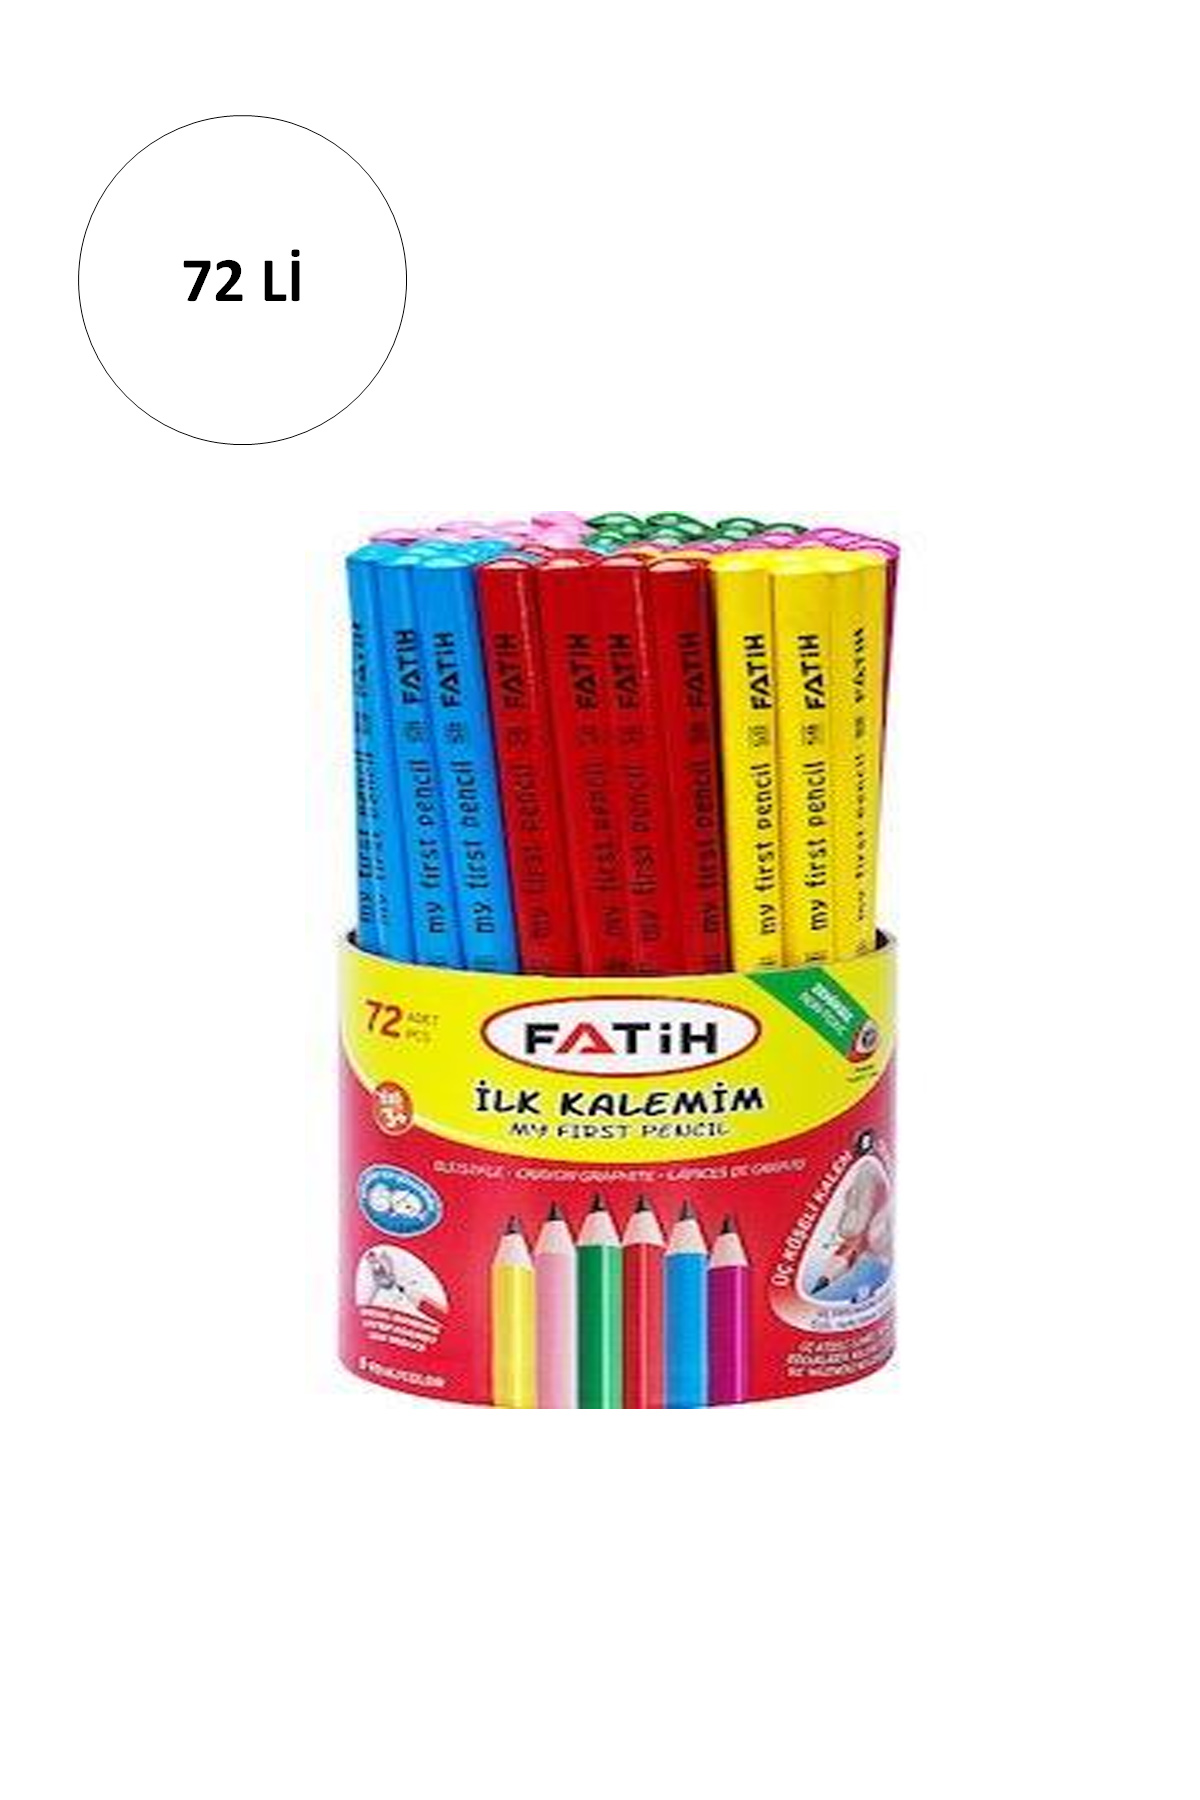 Fatih Jumbo Üçgen İlk Kalemim Kalemi Renkli 72 Li